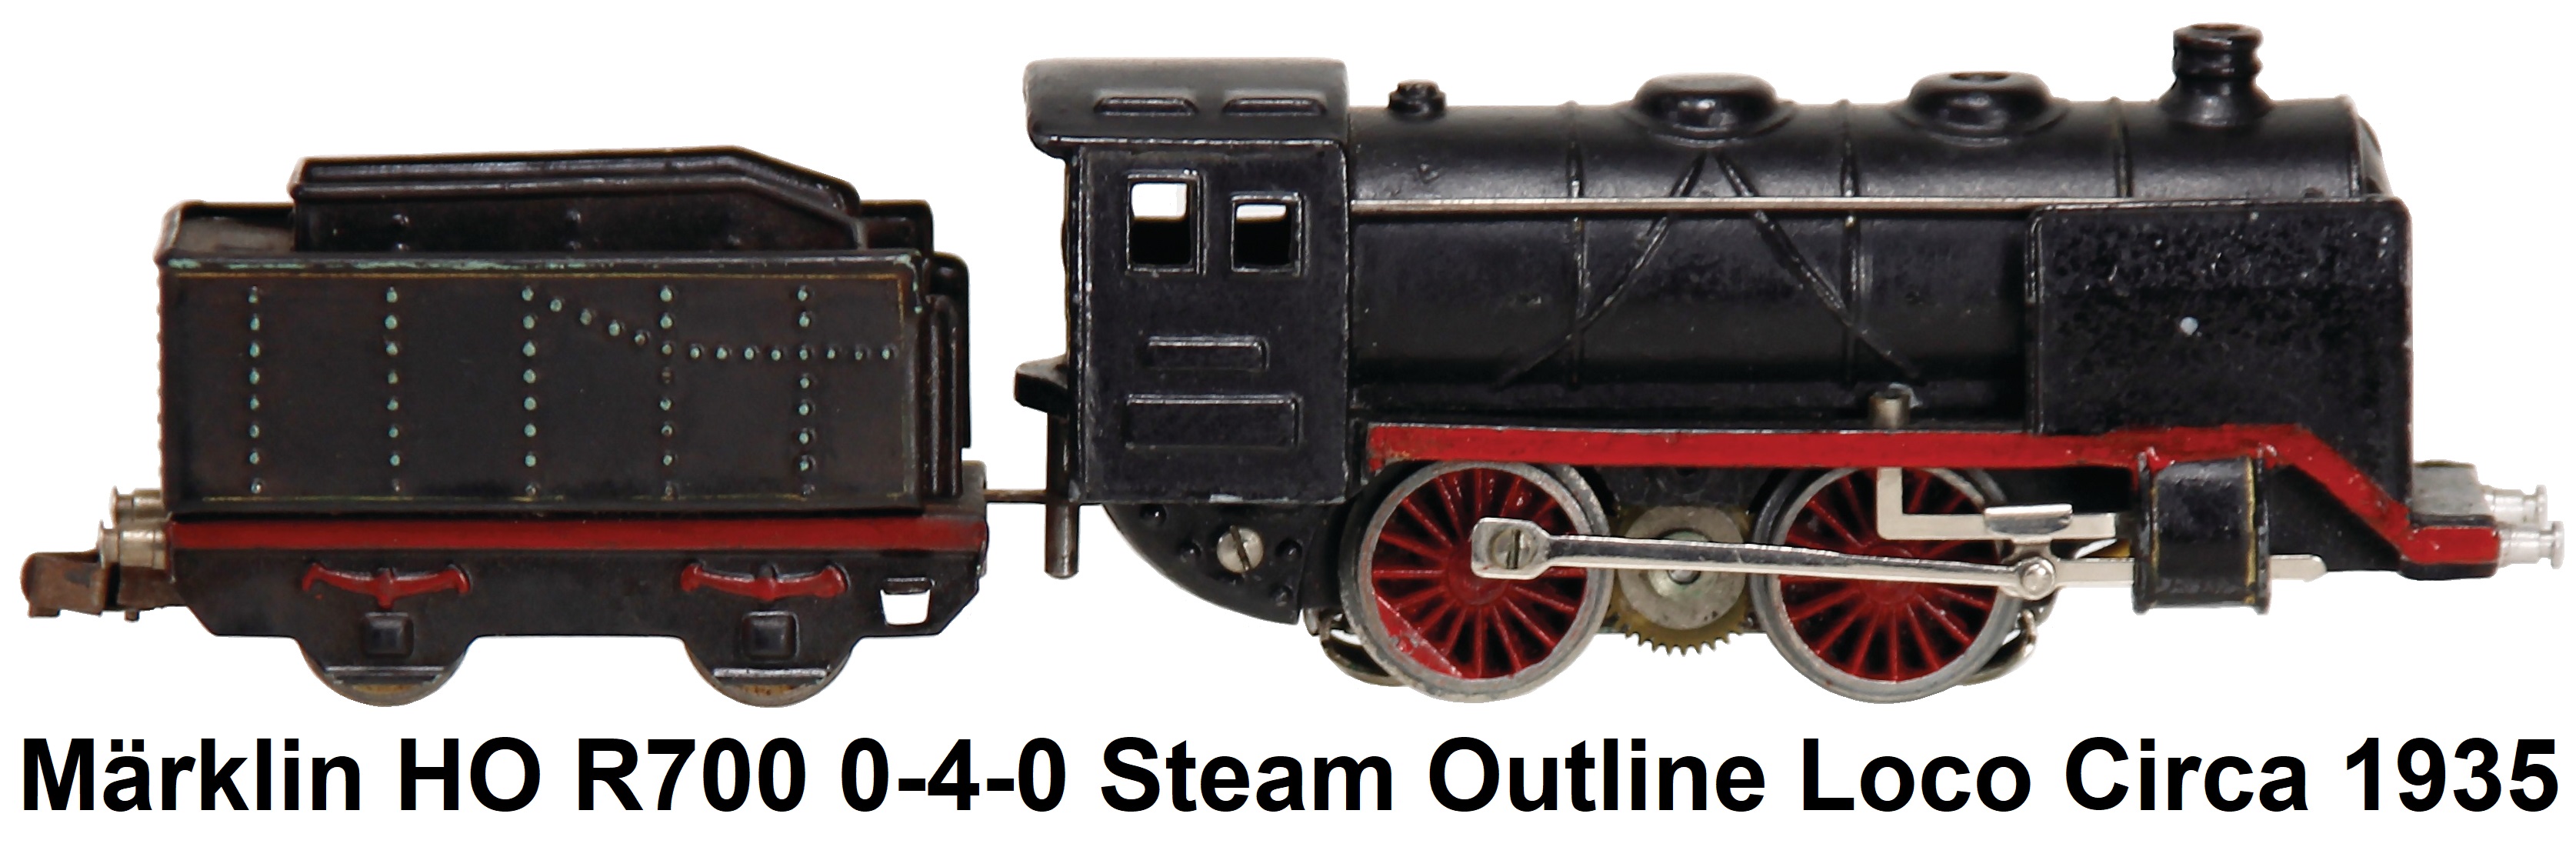 Märklin HO R700 Steam Outline Loco and Tender circa 1935